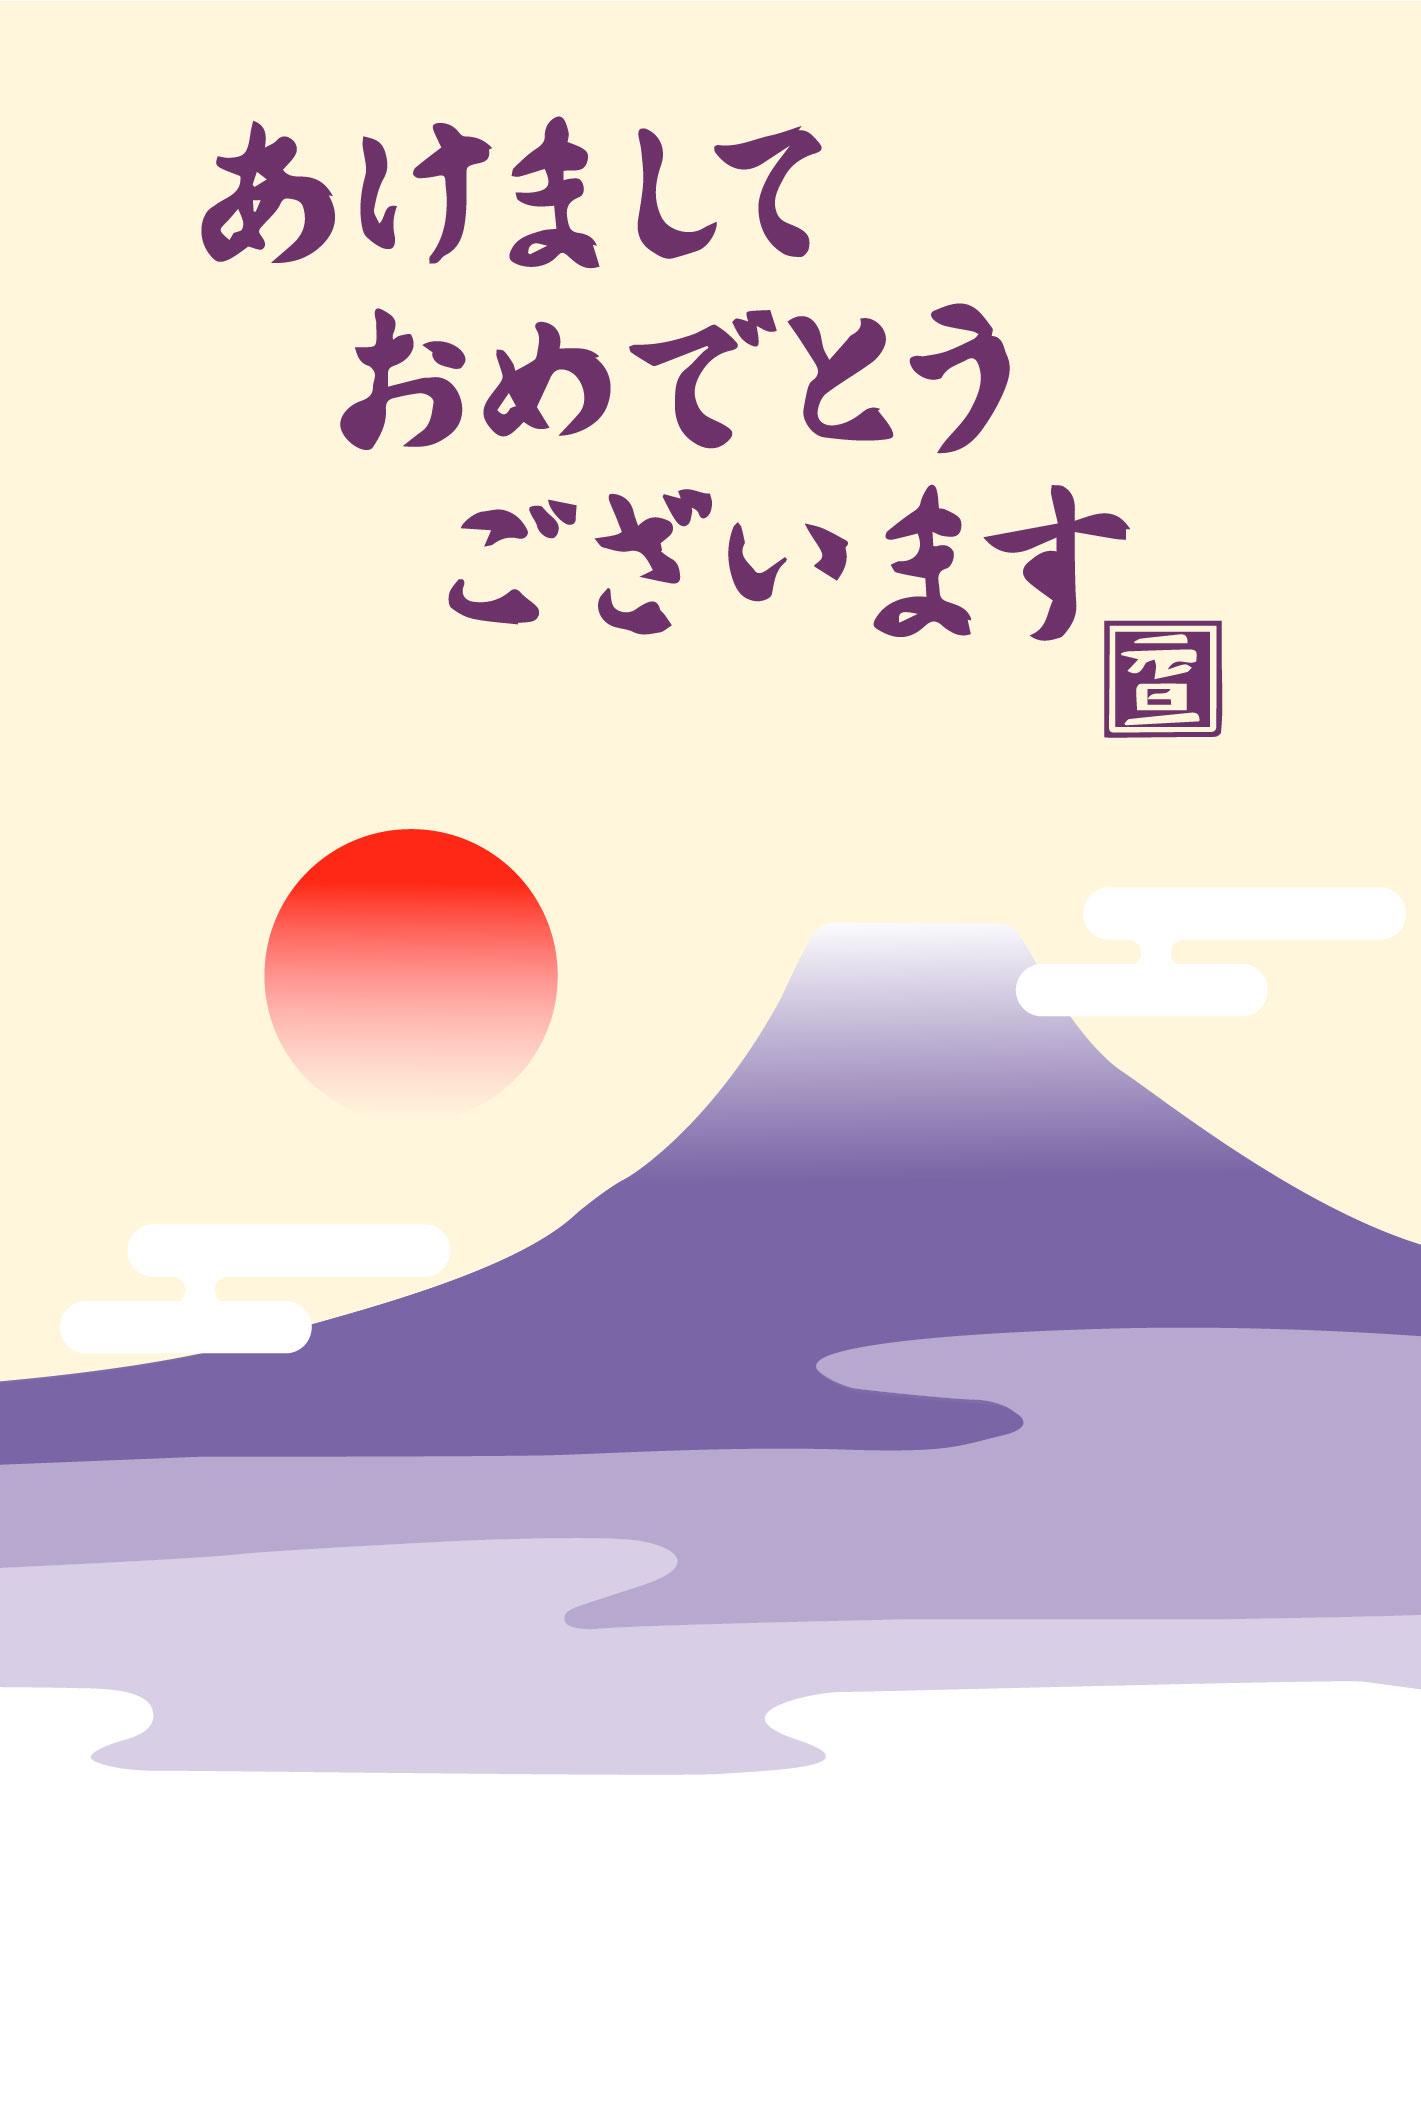 あけましておめでとうございます 紫富士山と初日の出のイラスト年賀状無料イラスト素材です 企業 ブランド等のロゴをillustrator Ai Eps形式 でトレース 無料ダウンロード